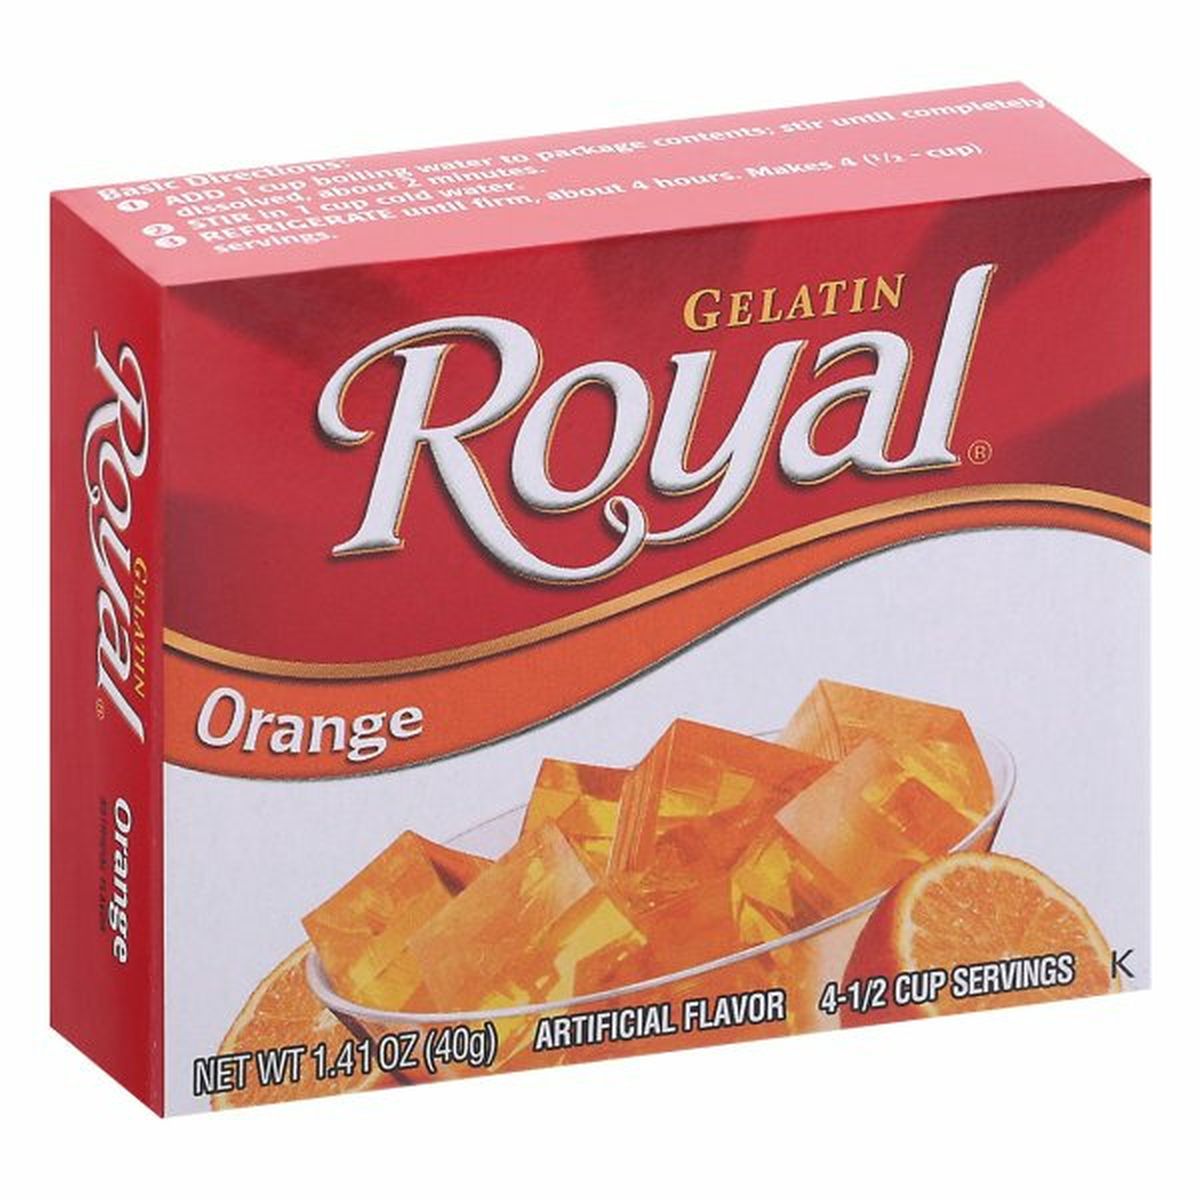 Calories in Royal Gelatin, Orange